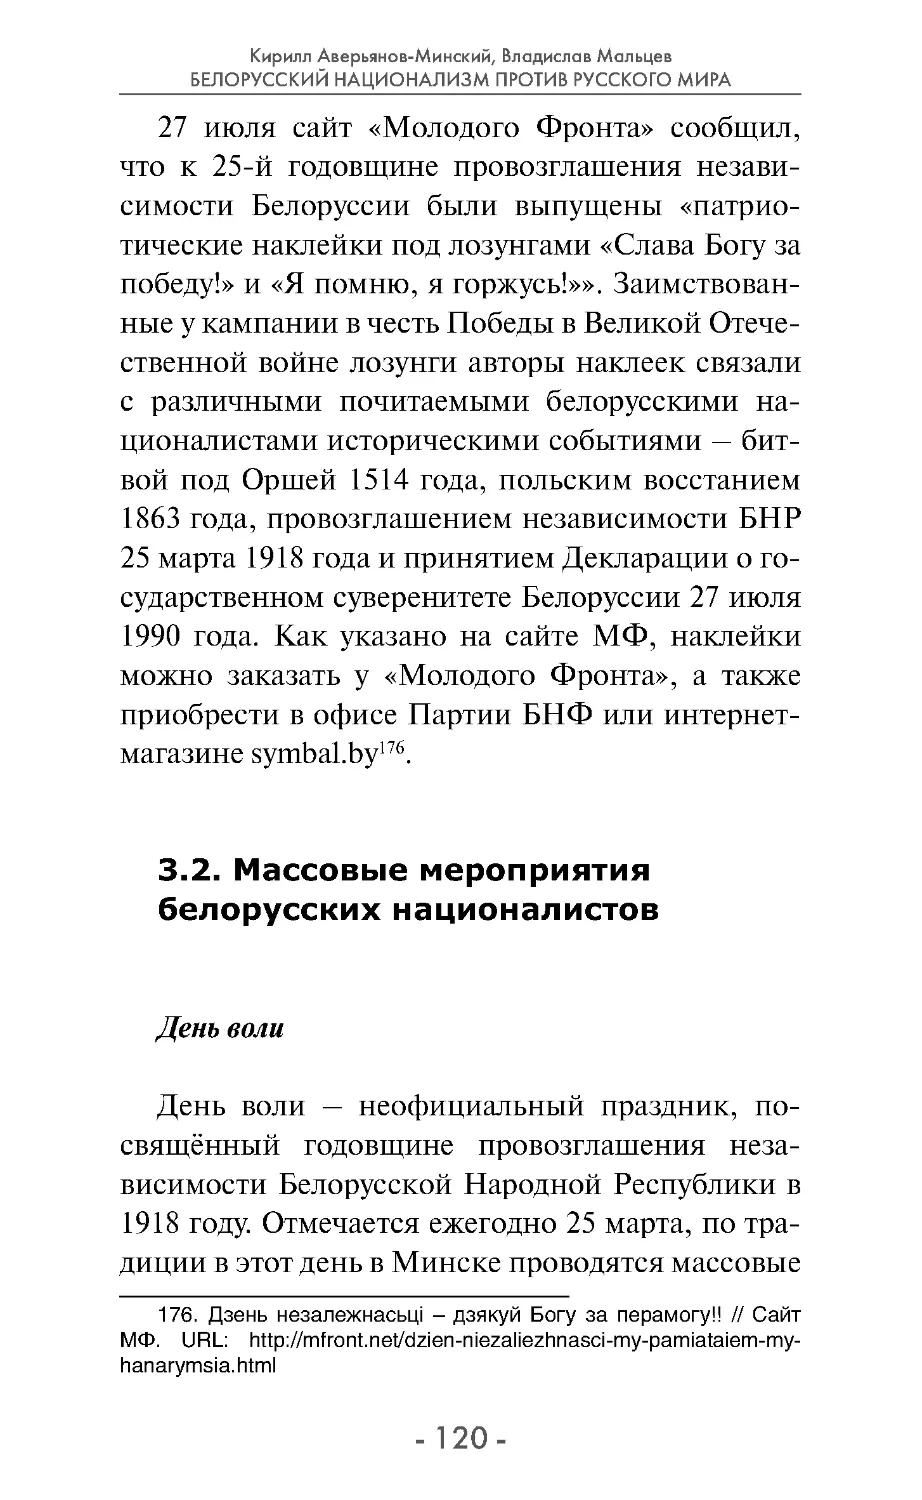 3.2. Массовые мероприятия белорусских националистов